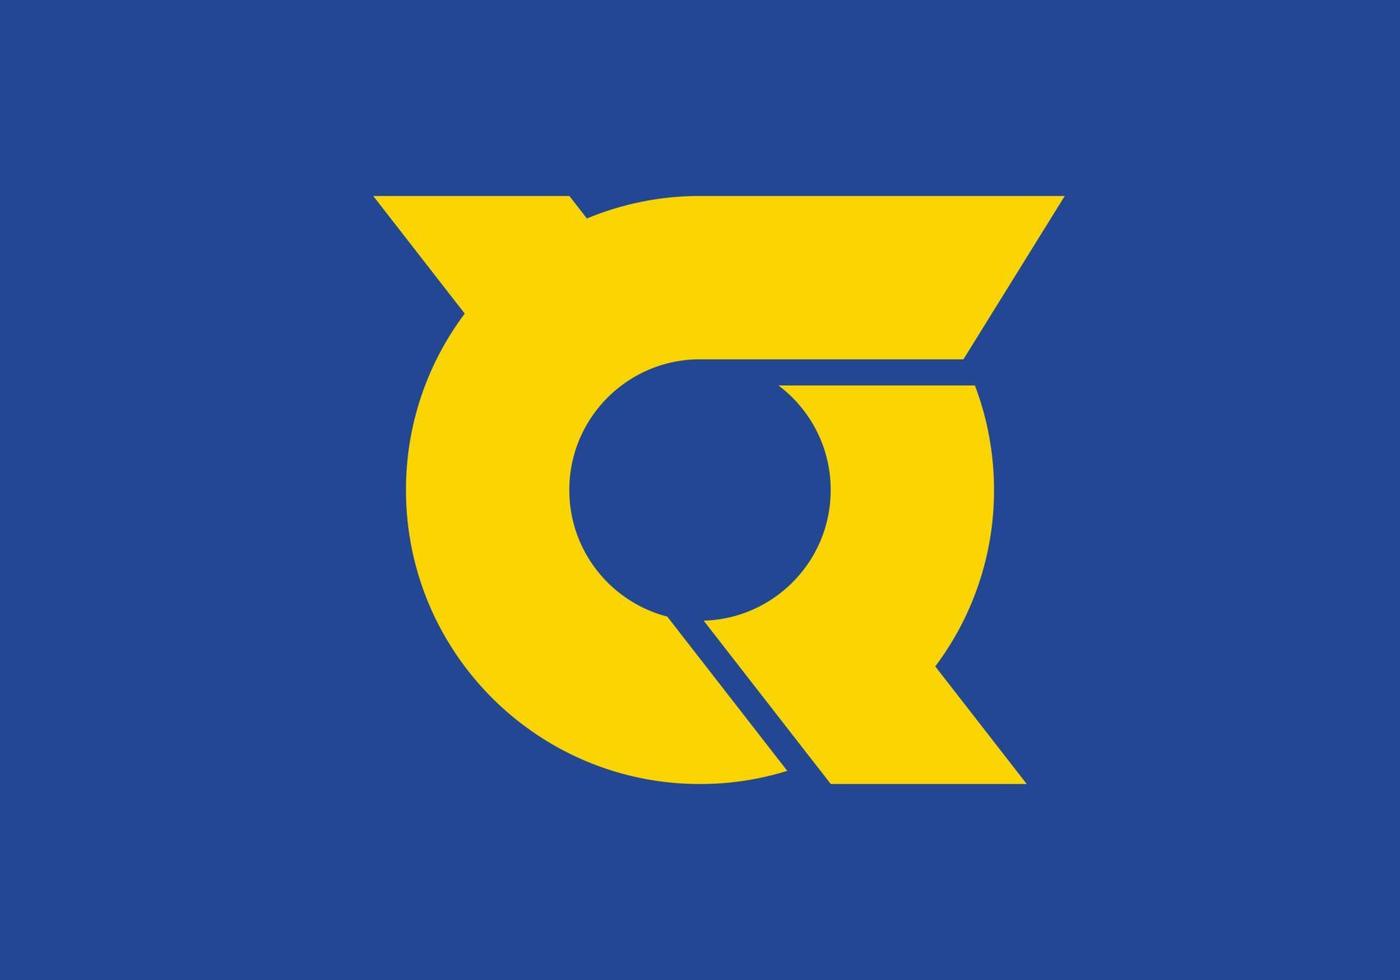 Tokushima flag, Japan prefecture. Vector illustration